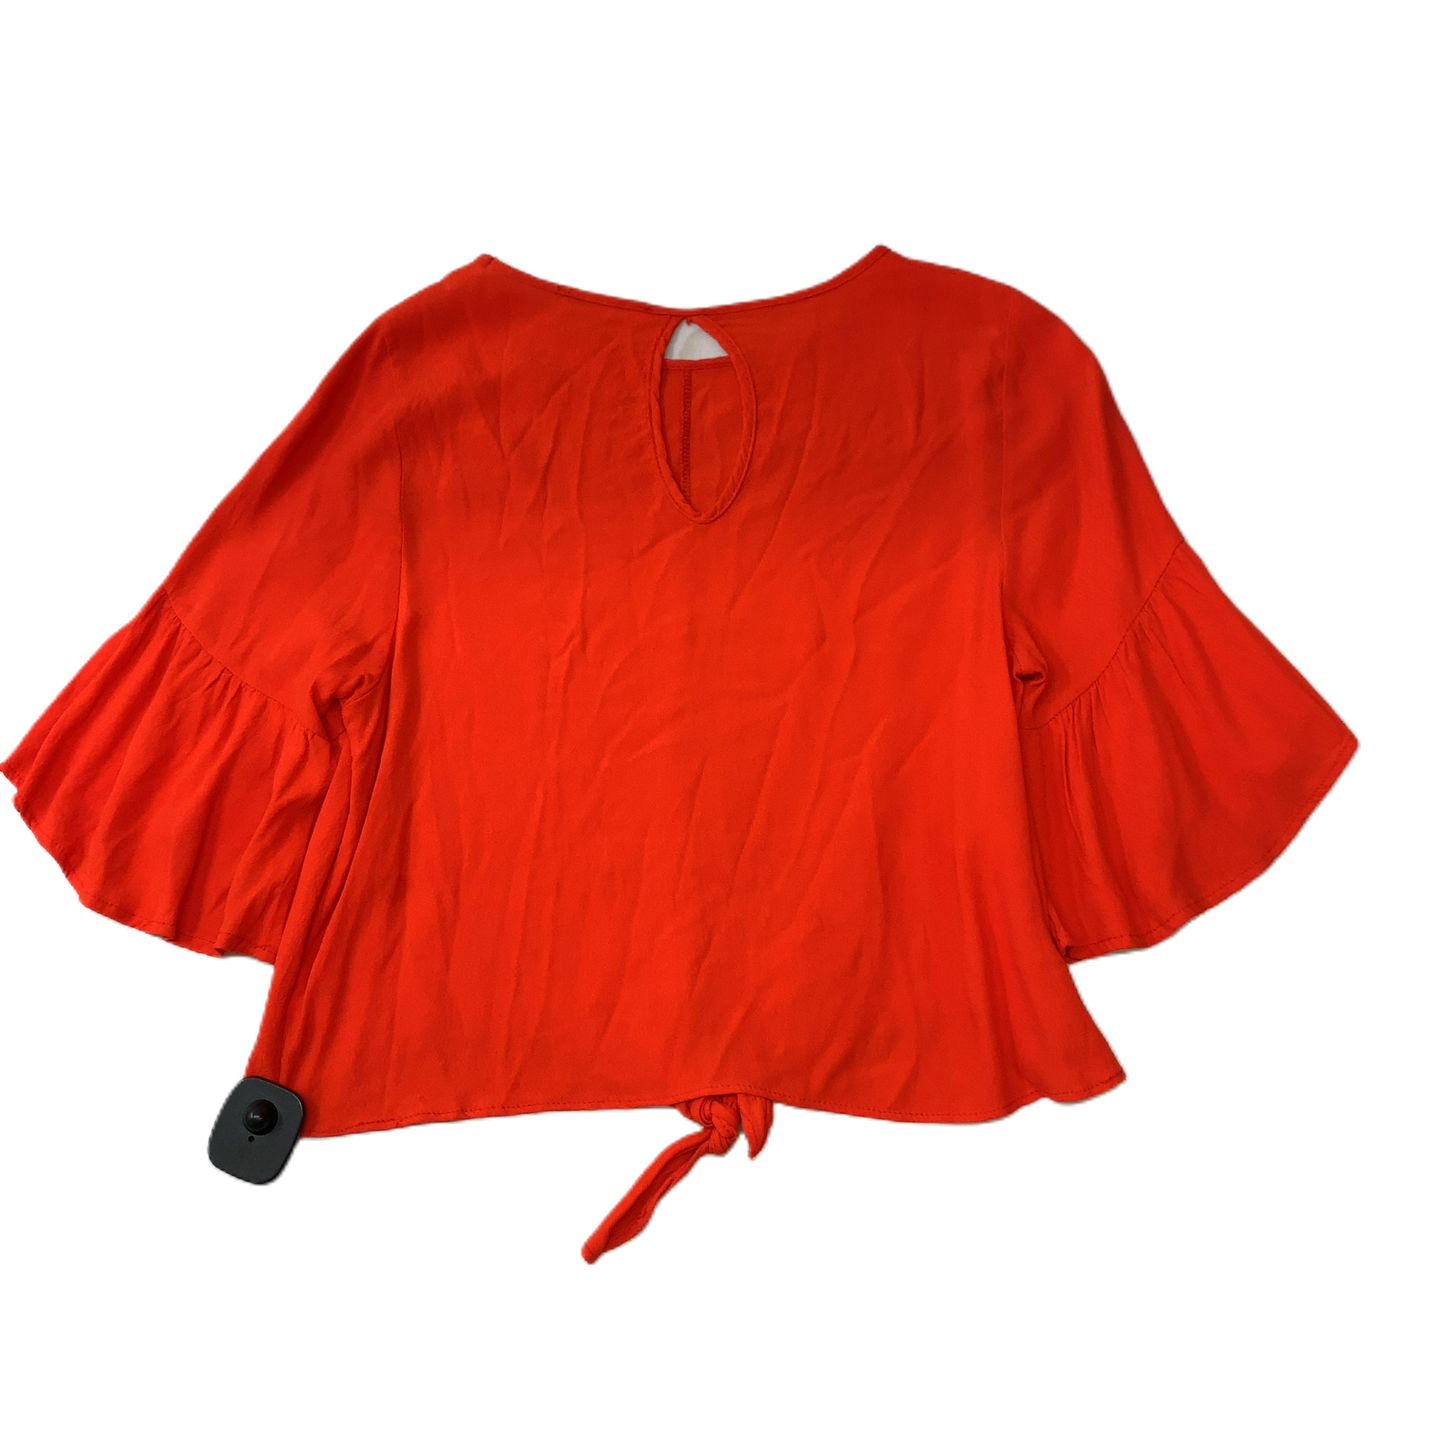 Blouse Short Sleeve By Newbury Kustom  Size: Xs